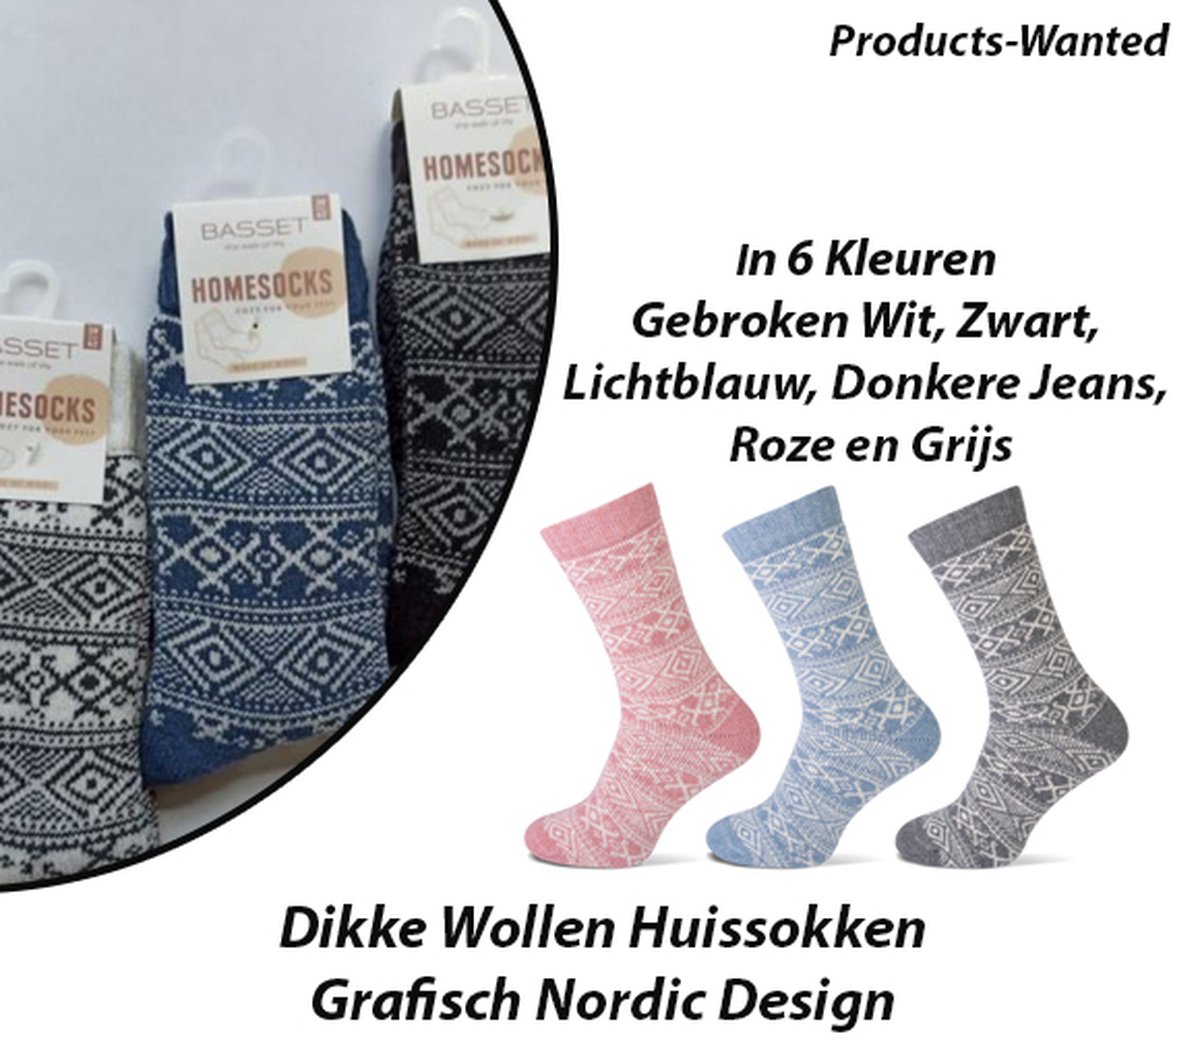 3-Paar Dikke Wollen Huissokken Grafisch Nordic Design in Lichtblauw, Grijs en Zwart 35-38